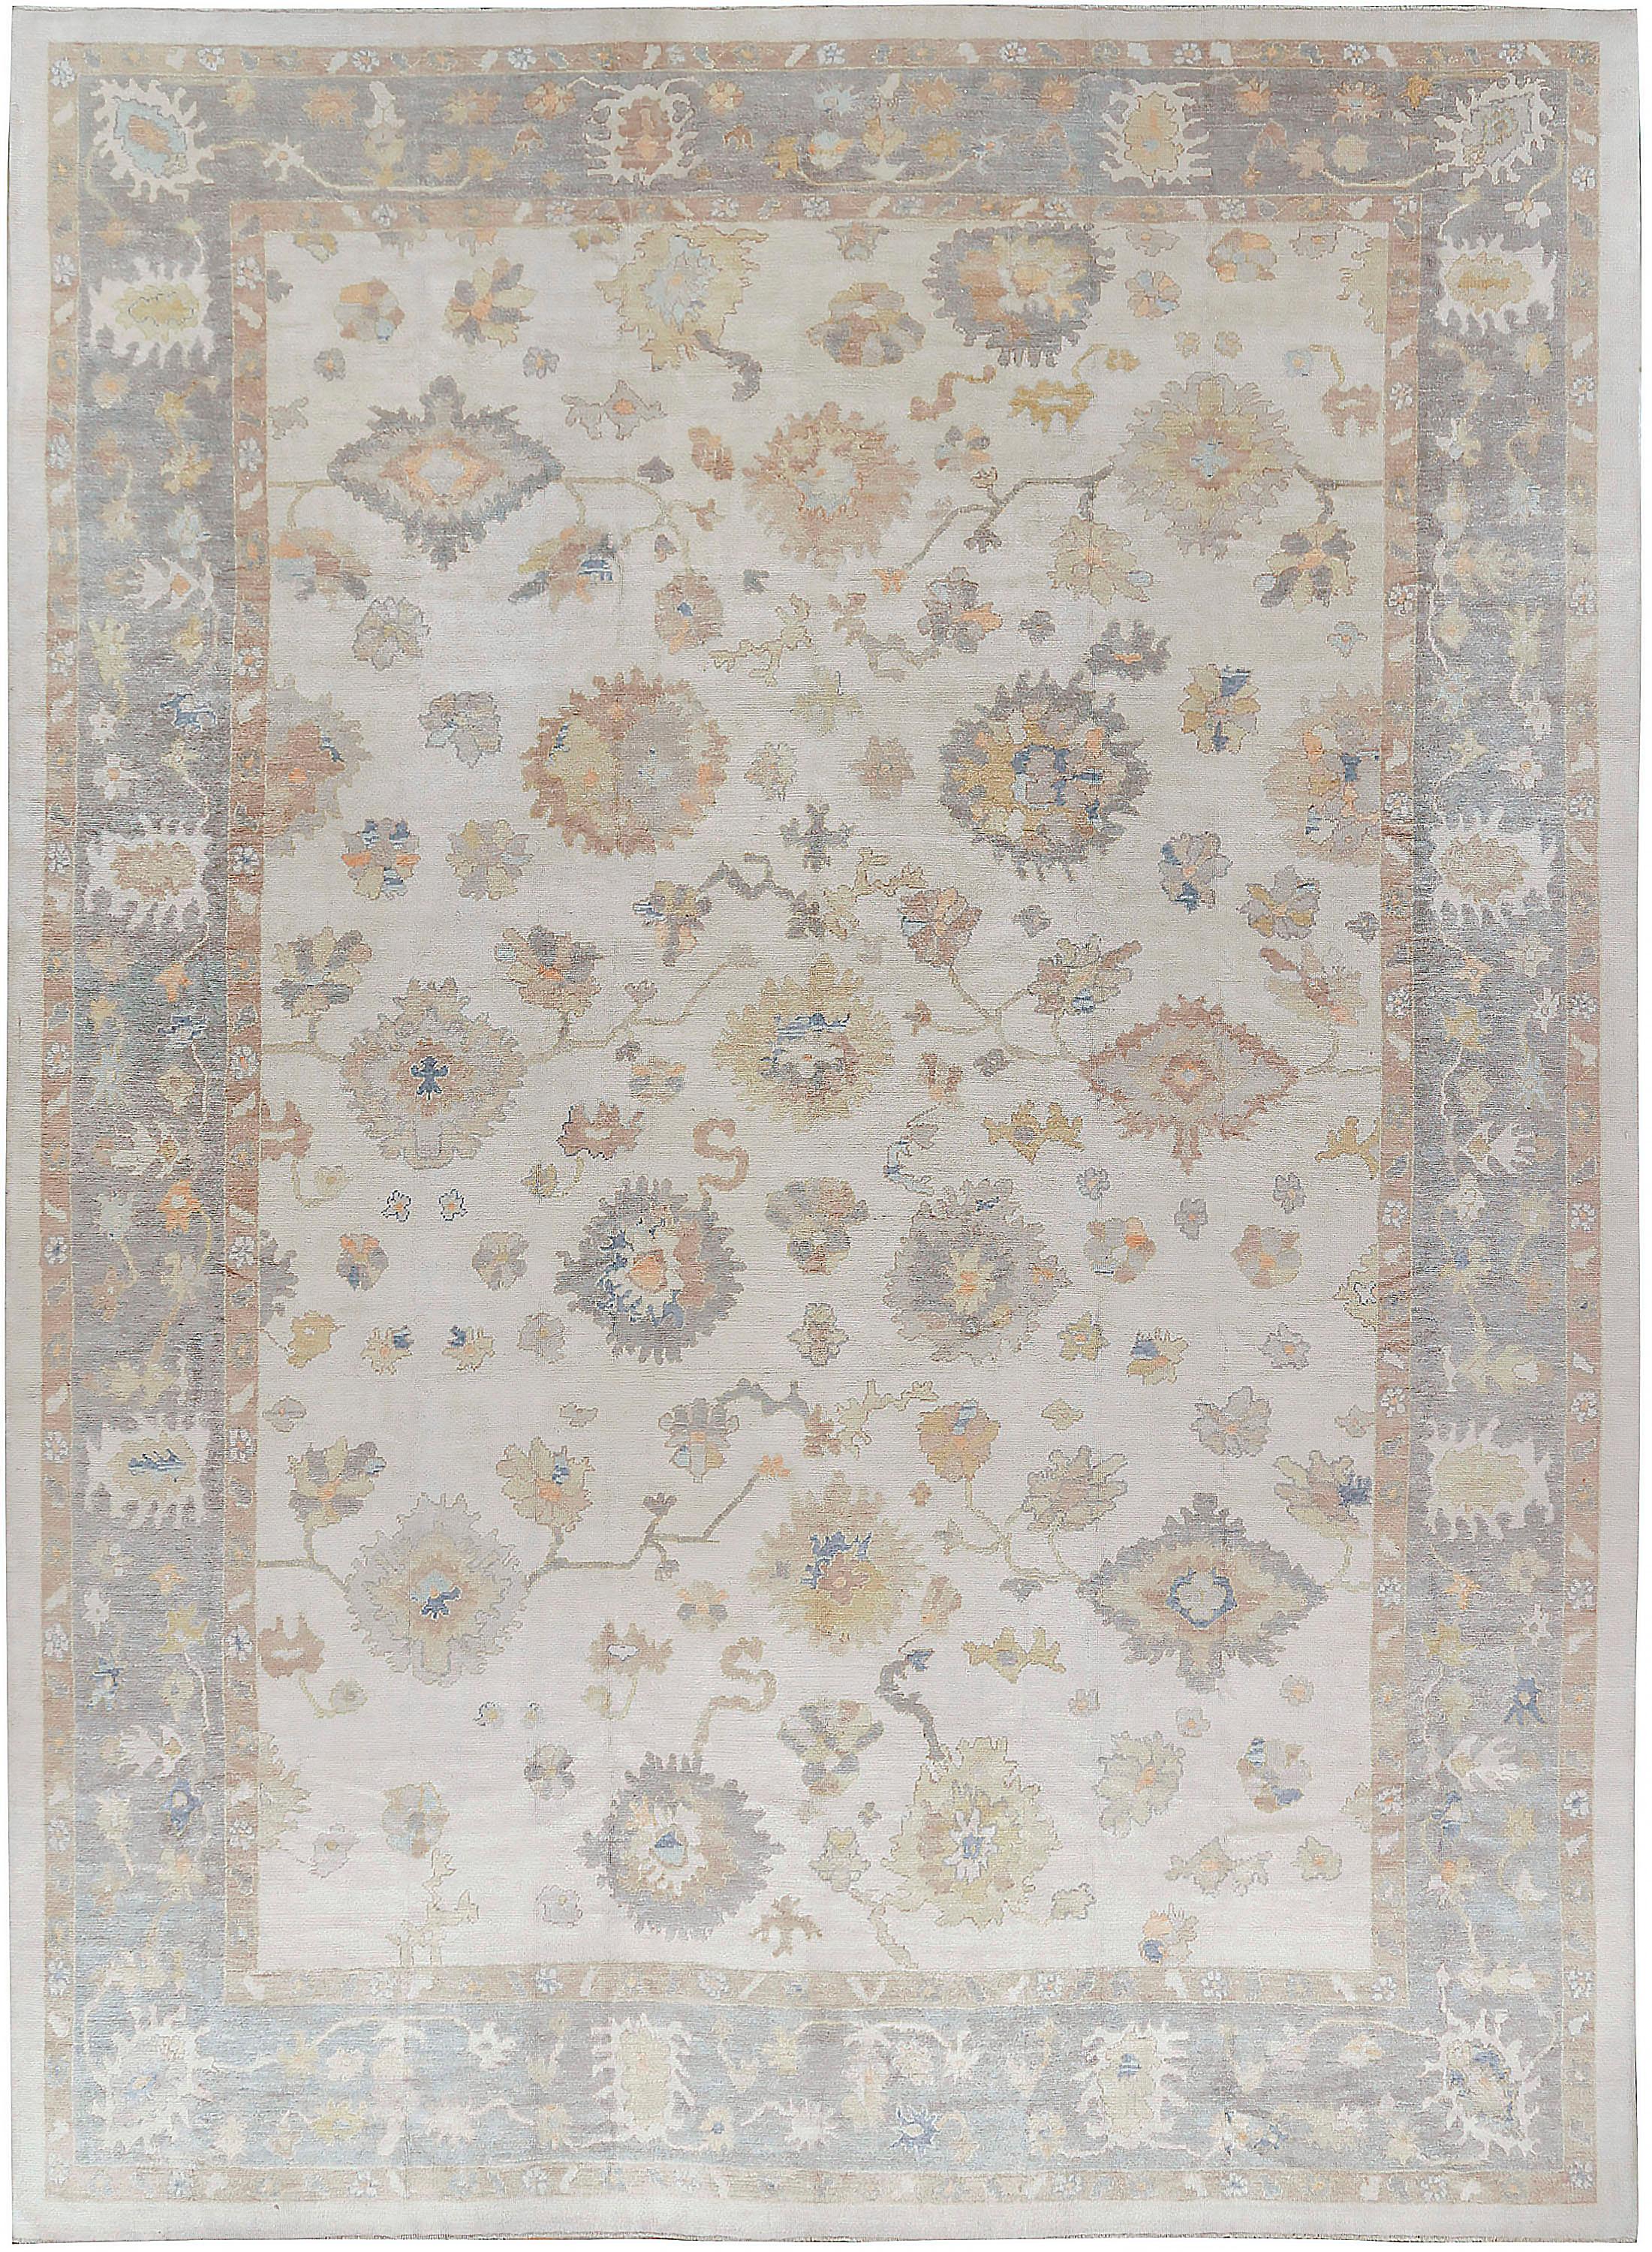 Tissé à la main en Turquie en utilisant les matériaux les plus fins, ce tapis est une recréation classique d'un tapis Oushak dans des couleurs douces.